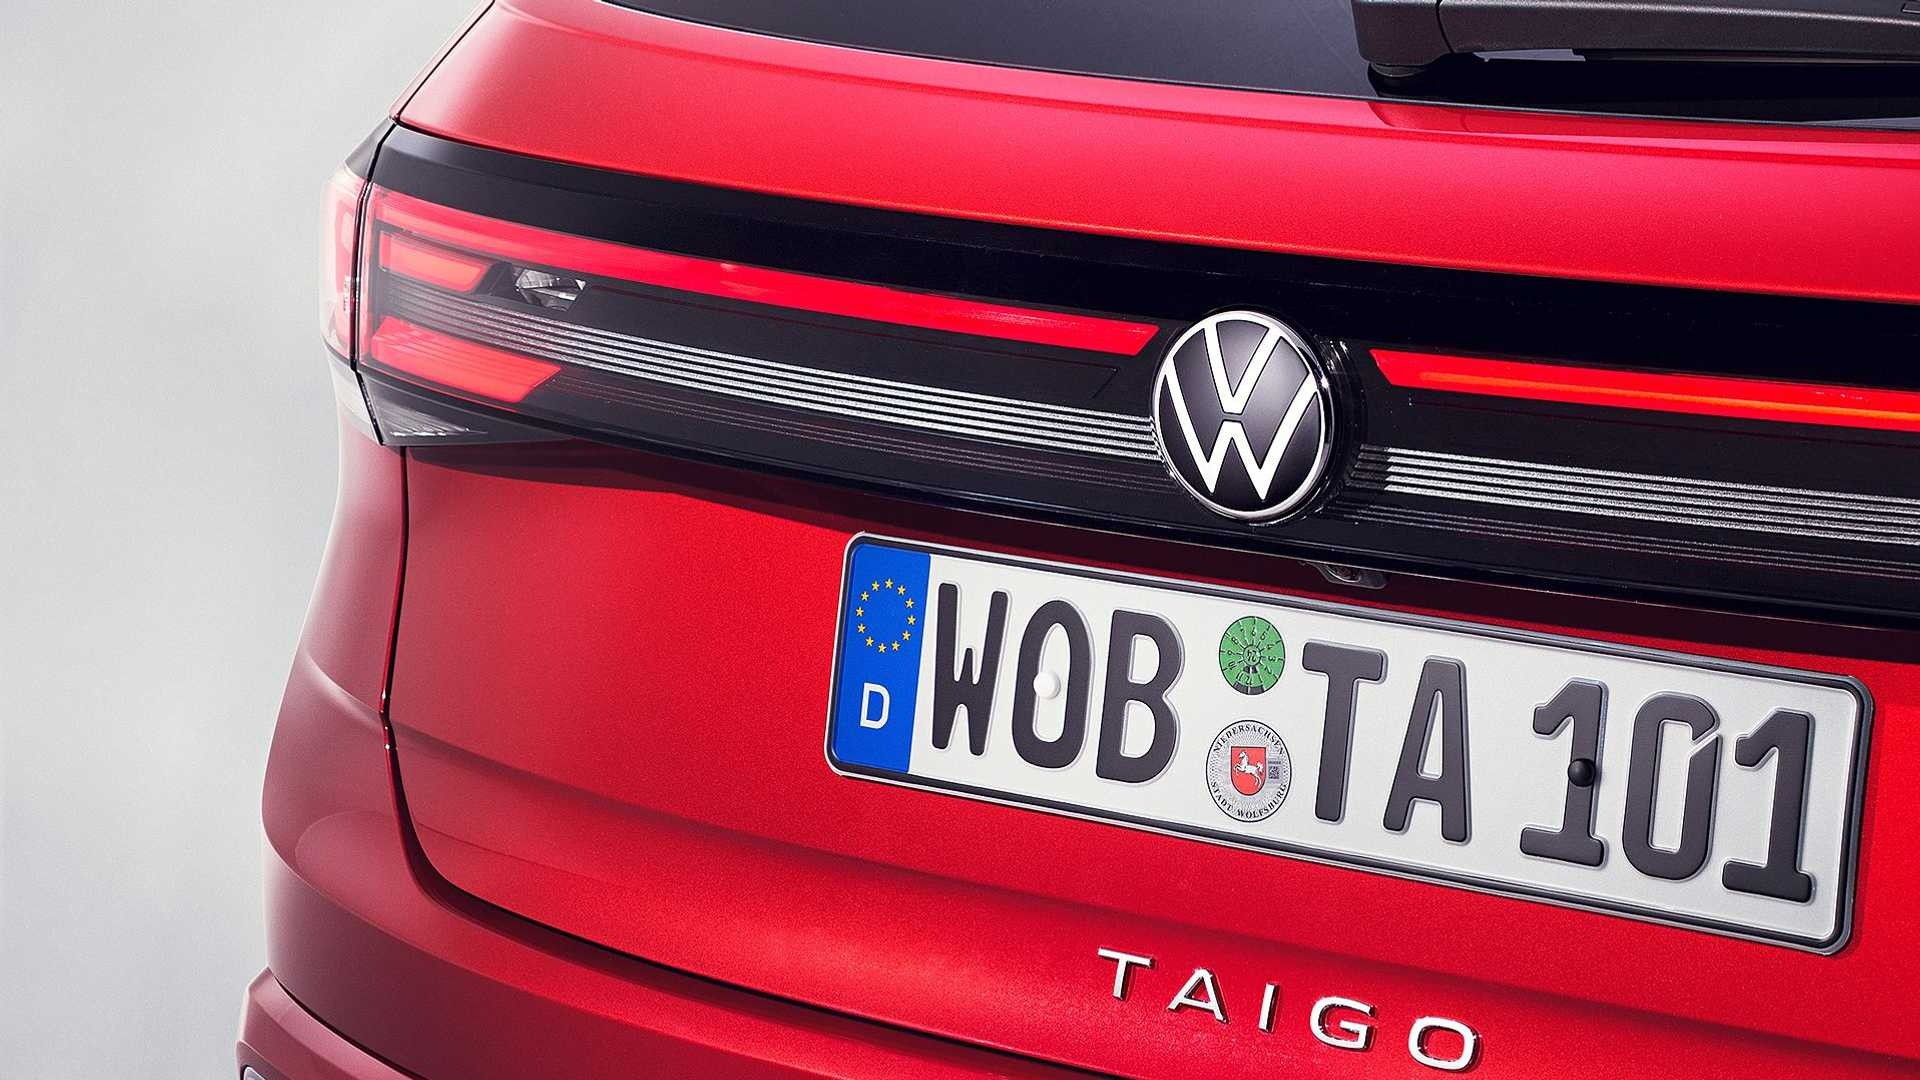 2021 Volkswagen Taigo makes its debut in Europe